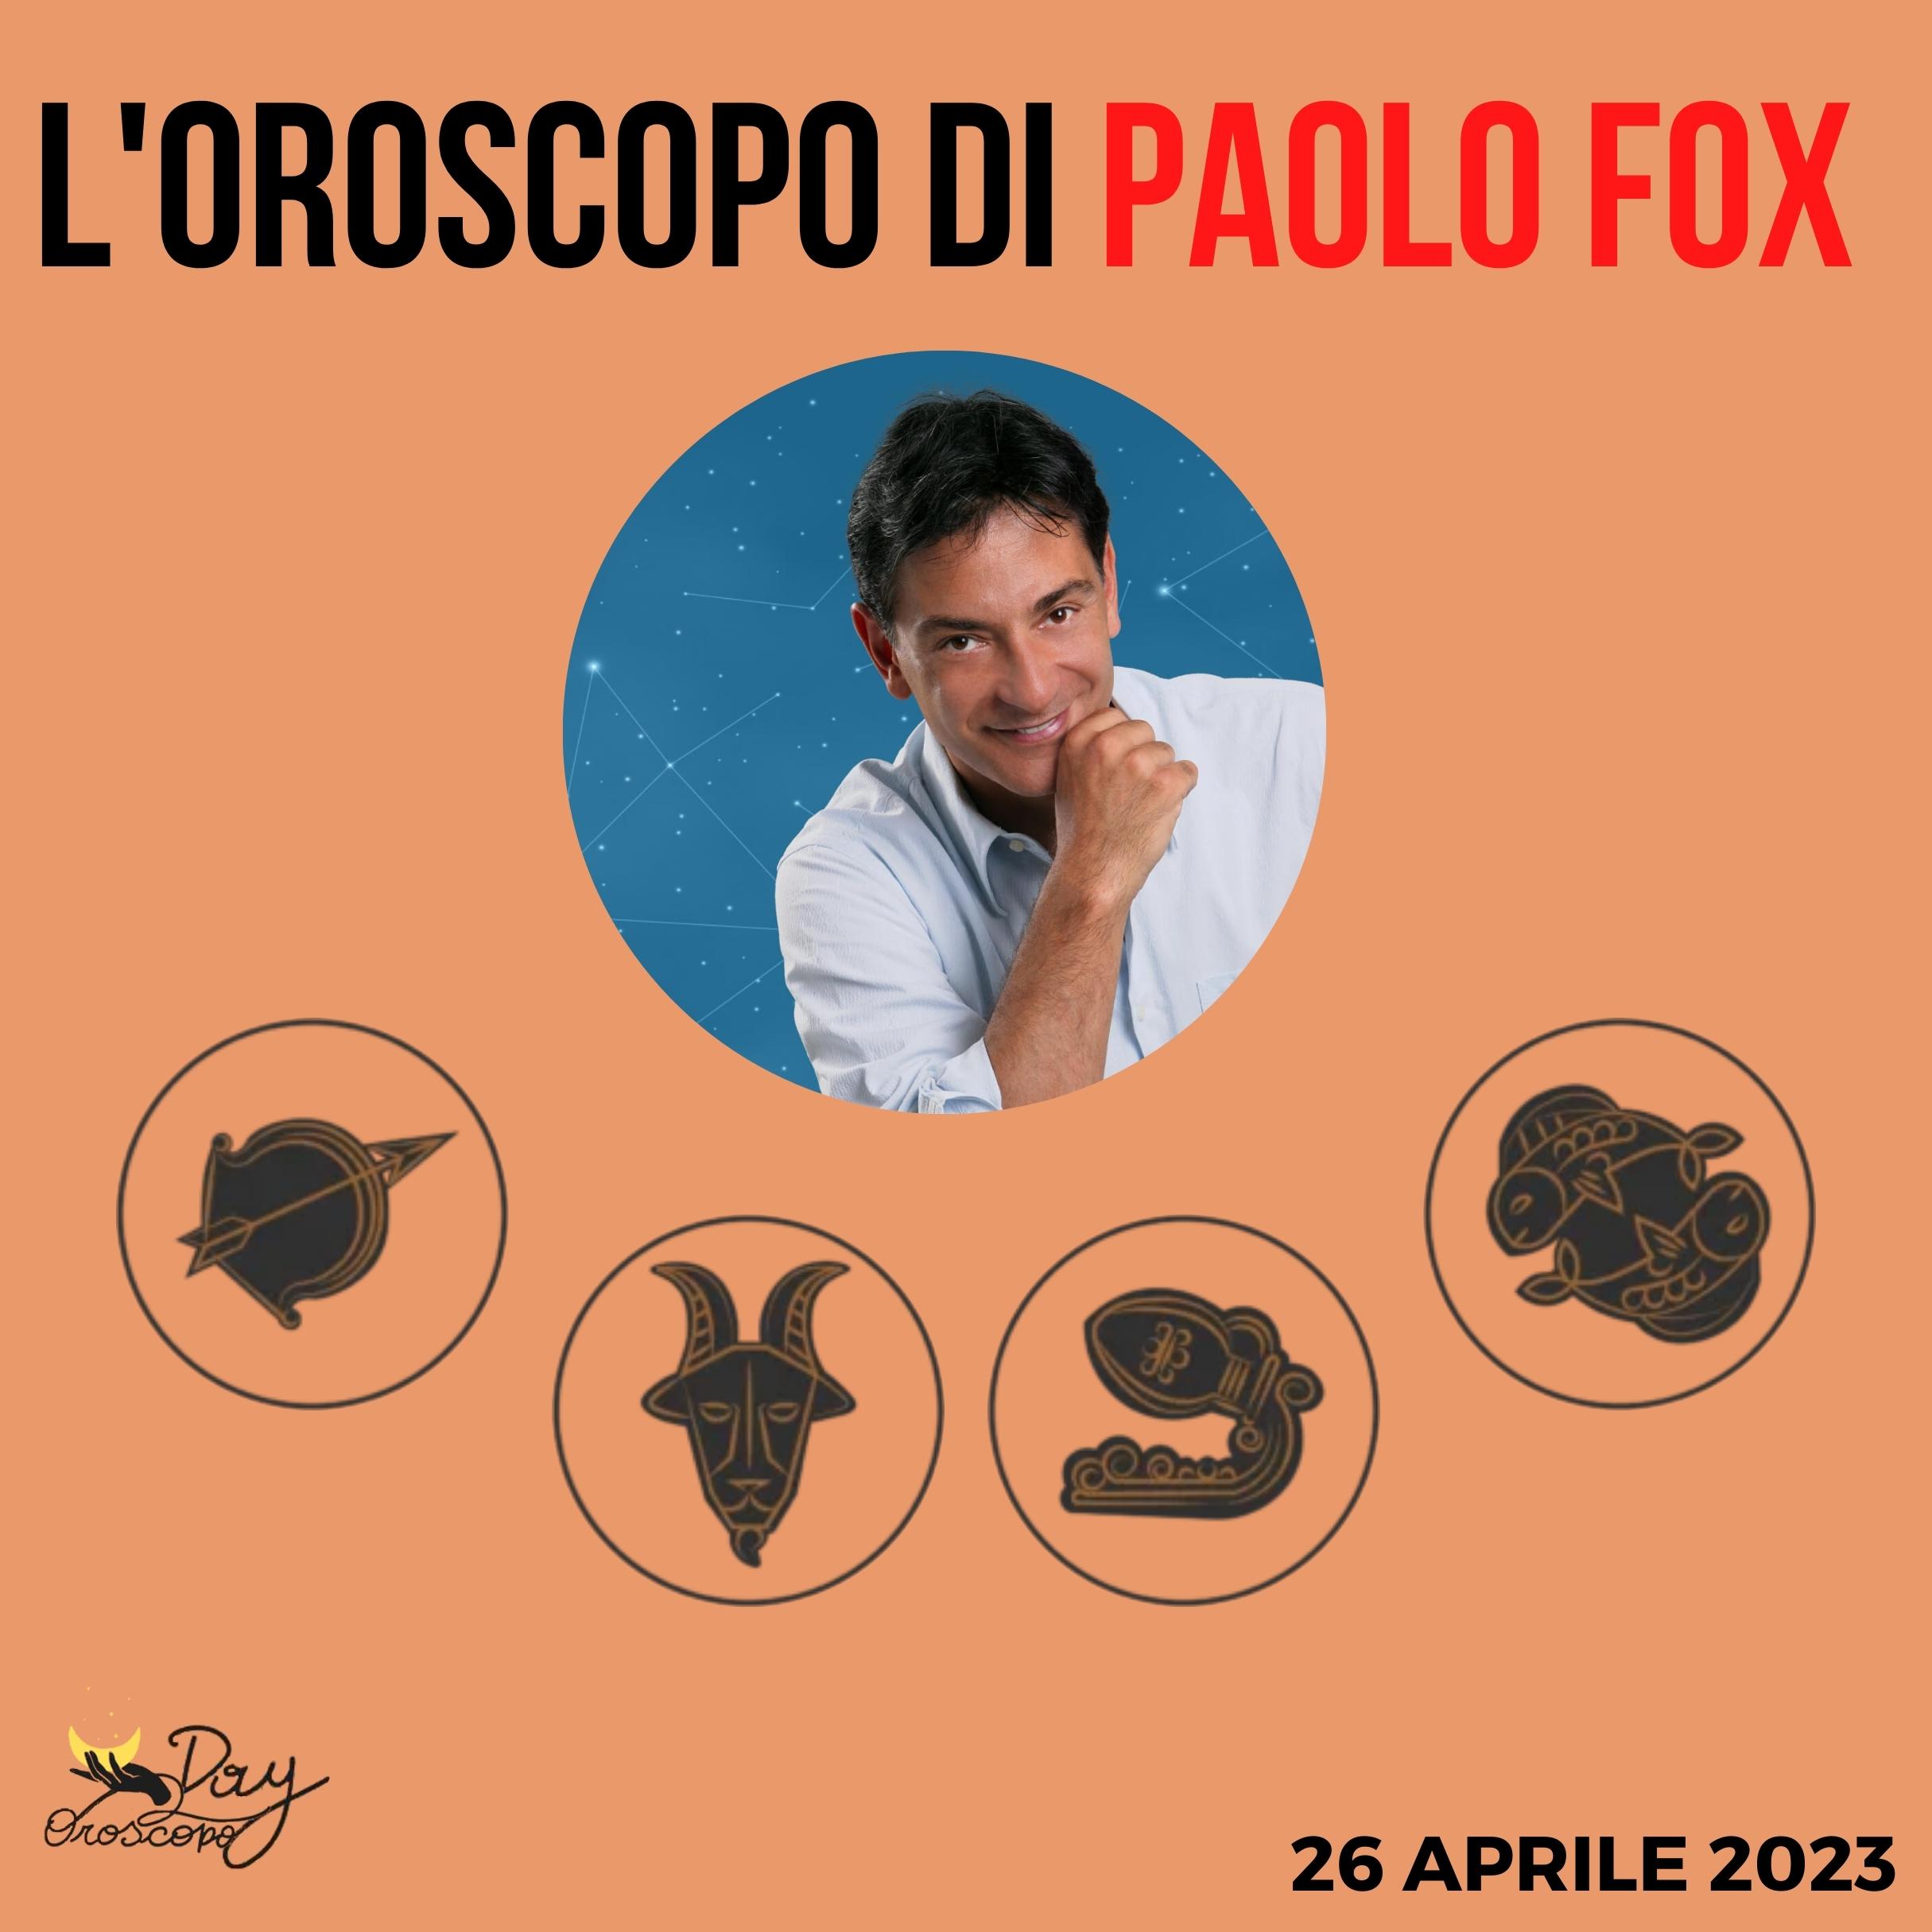 Oroscopo oggi domani Paolo Fox 26 aprile Sagittario Capricorno Acquario Pesci